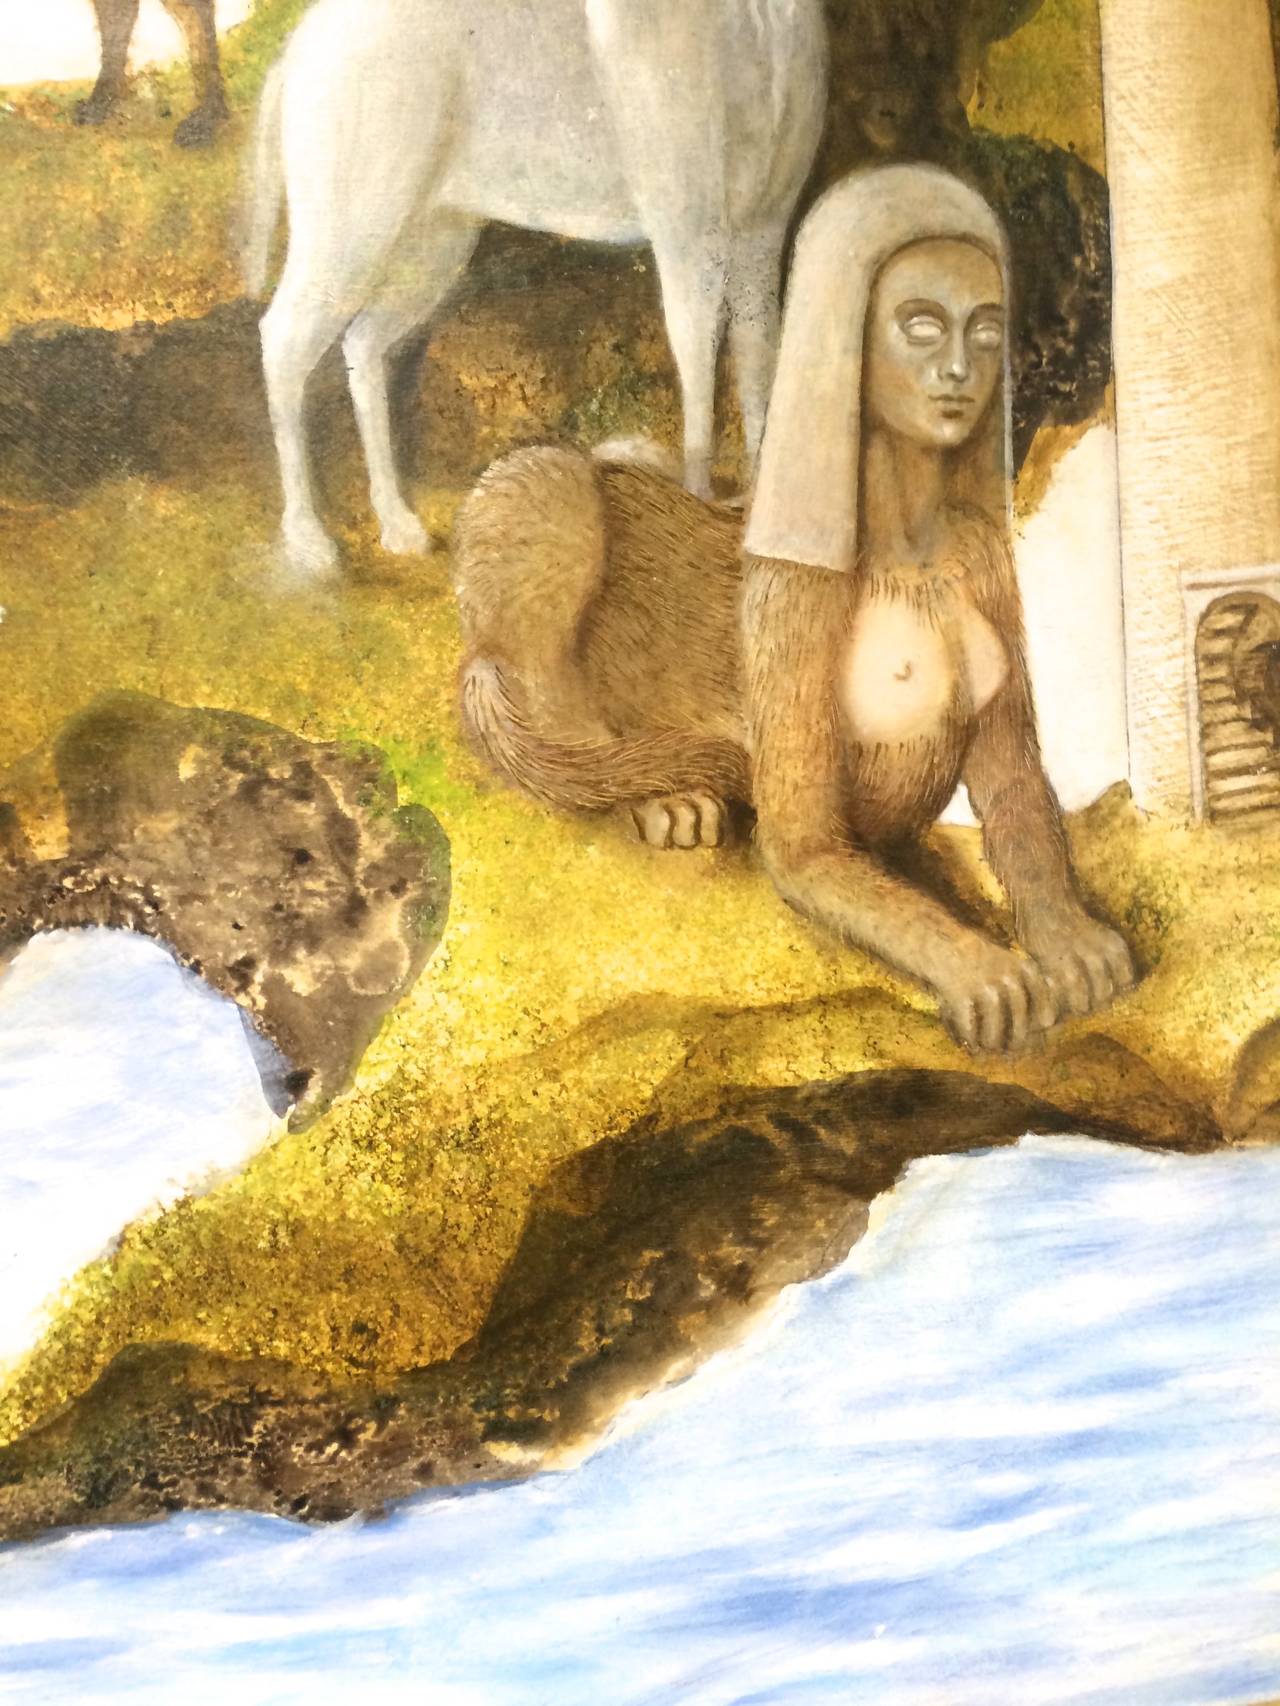 La Mujer Isla The Island Woman, peinture surréaliste mexicaine - Surréalisme Painting par Enrique Chavarria